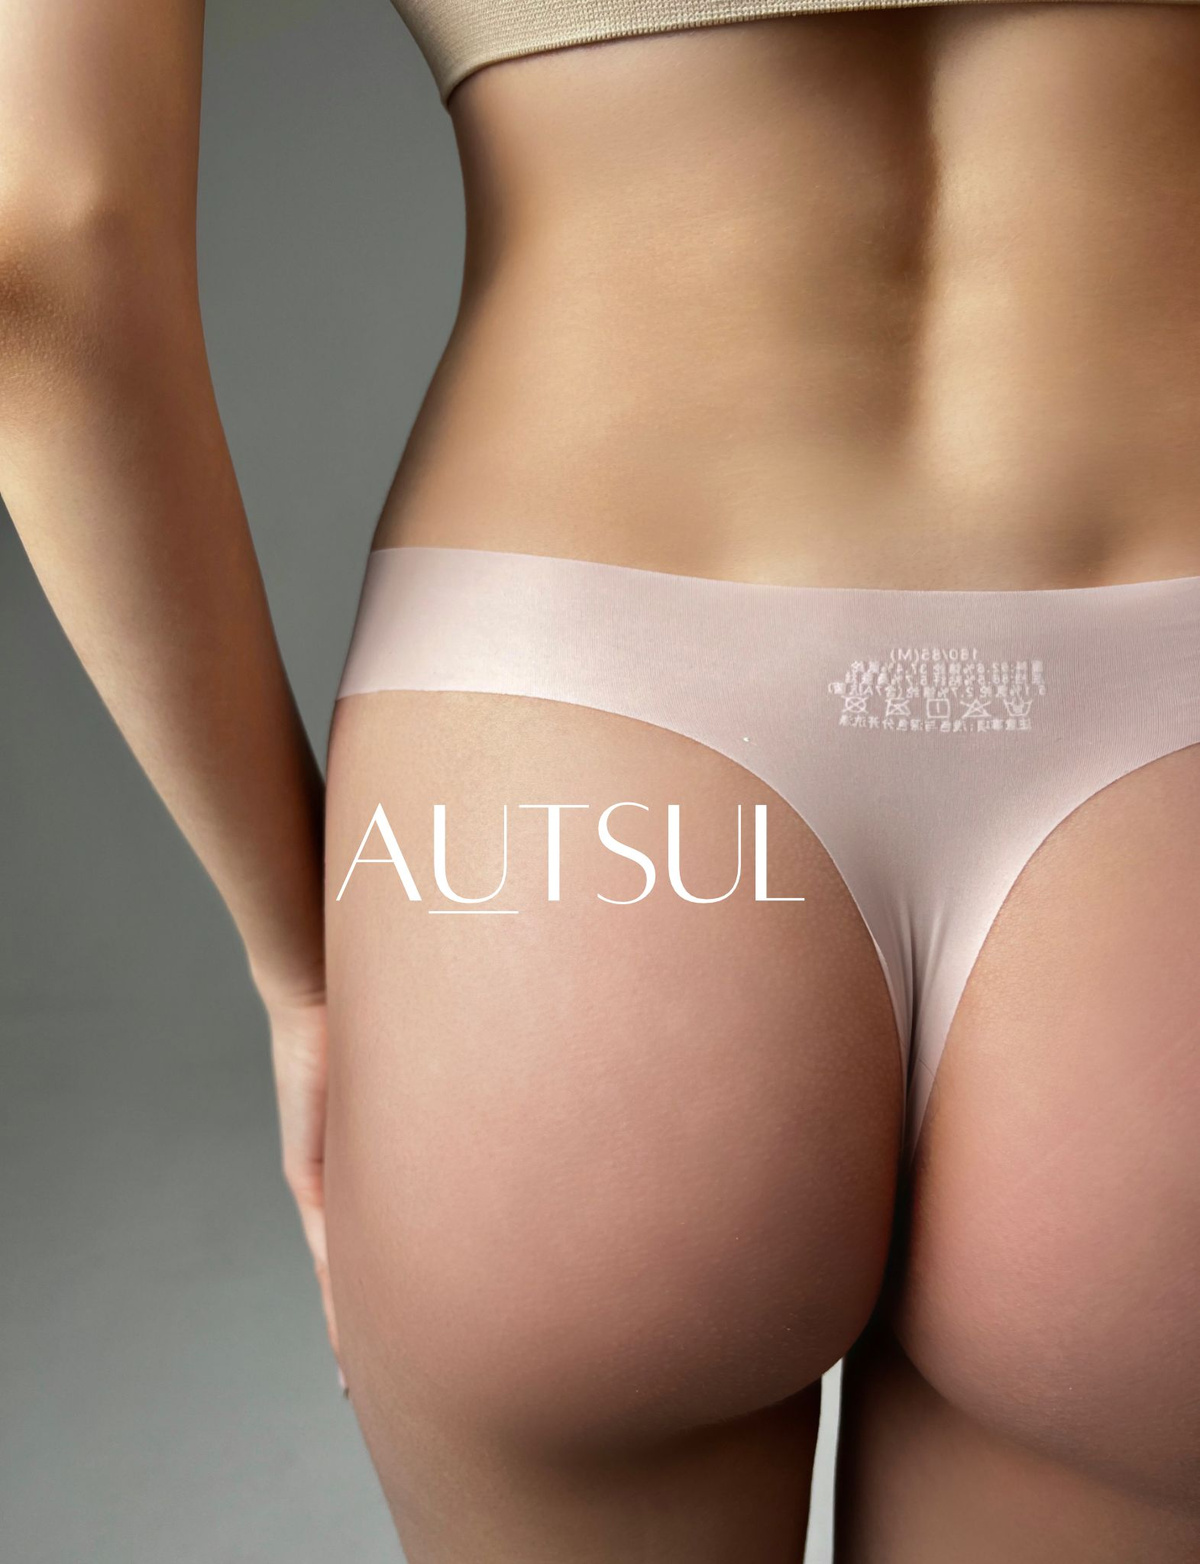 Набор из 2 штук, невесомые прозрачные женские трусы стринги из ледяного шелка от компании Autsul – комфорт в сочетании с сексуальностью.